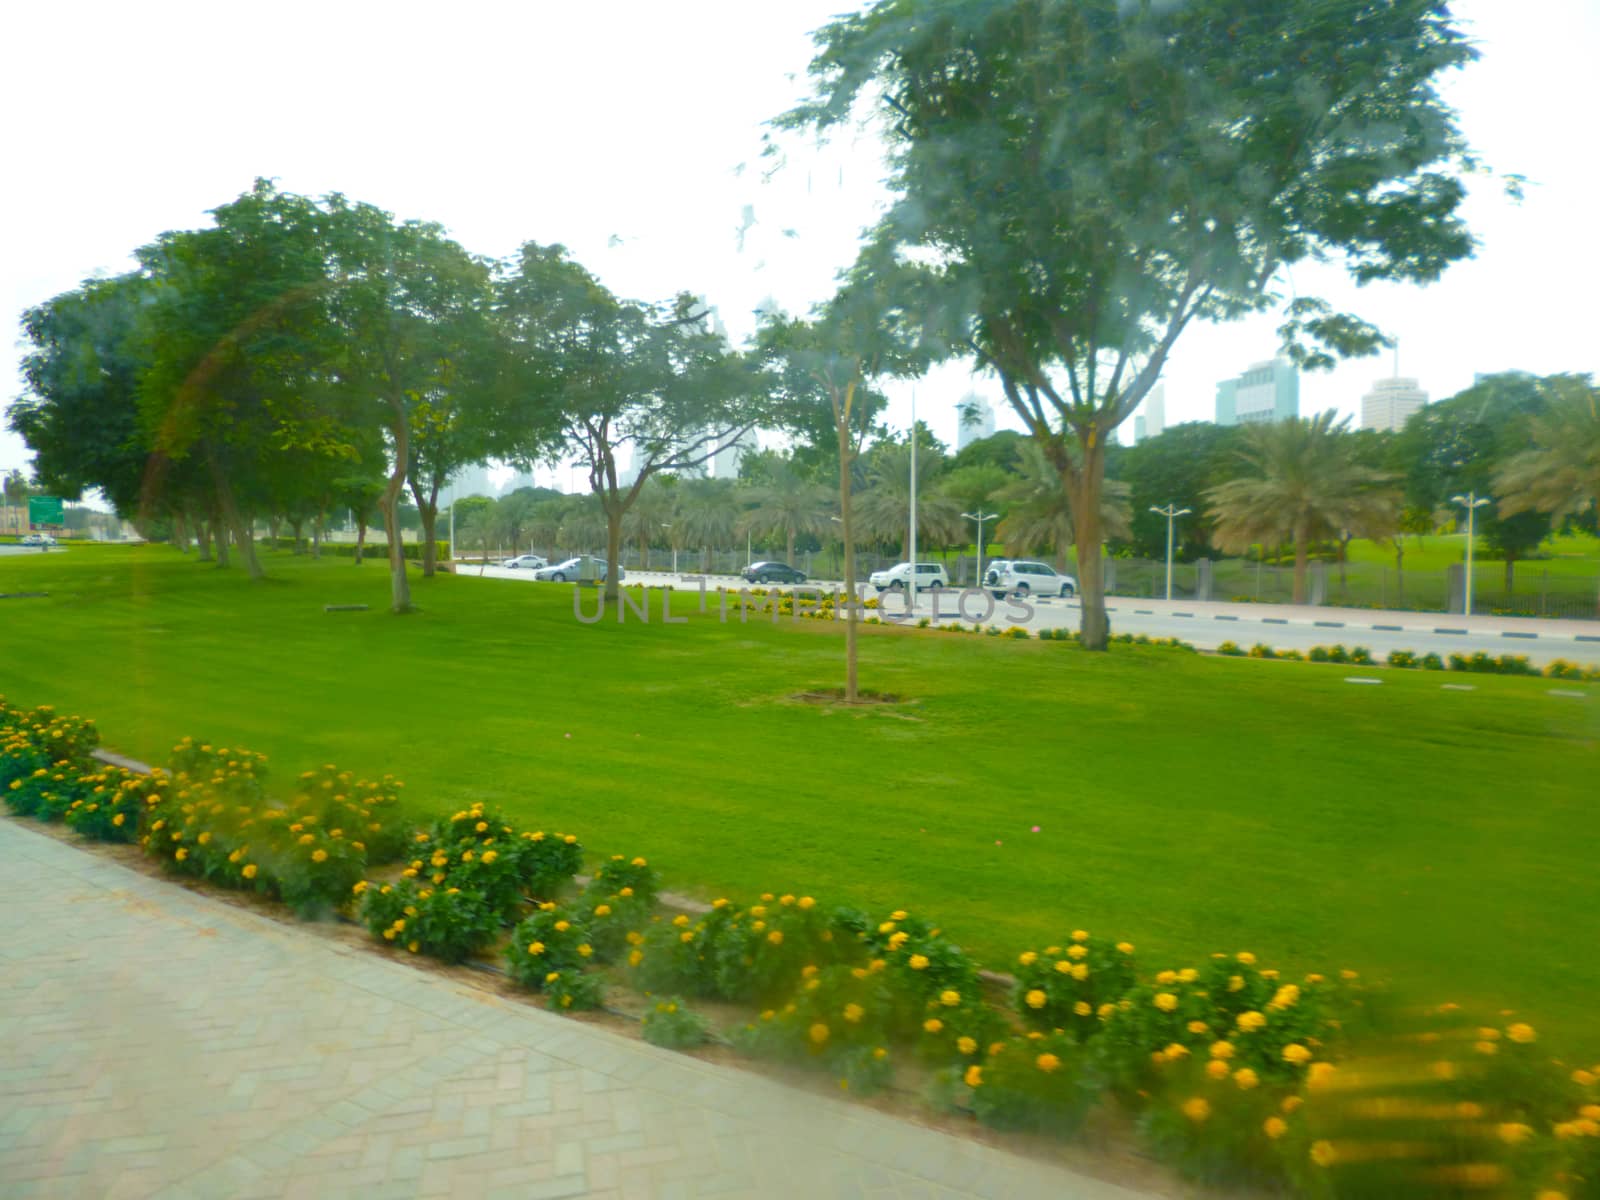 a park in dubai by gswagh71